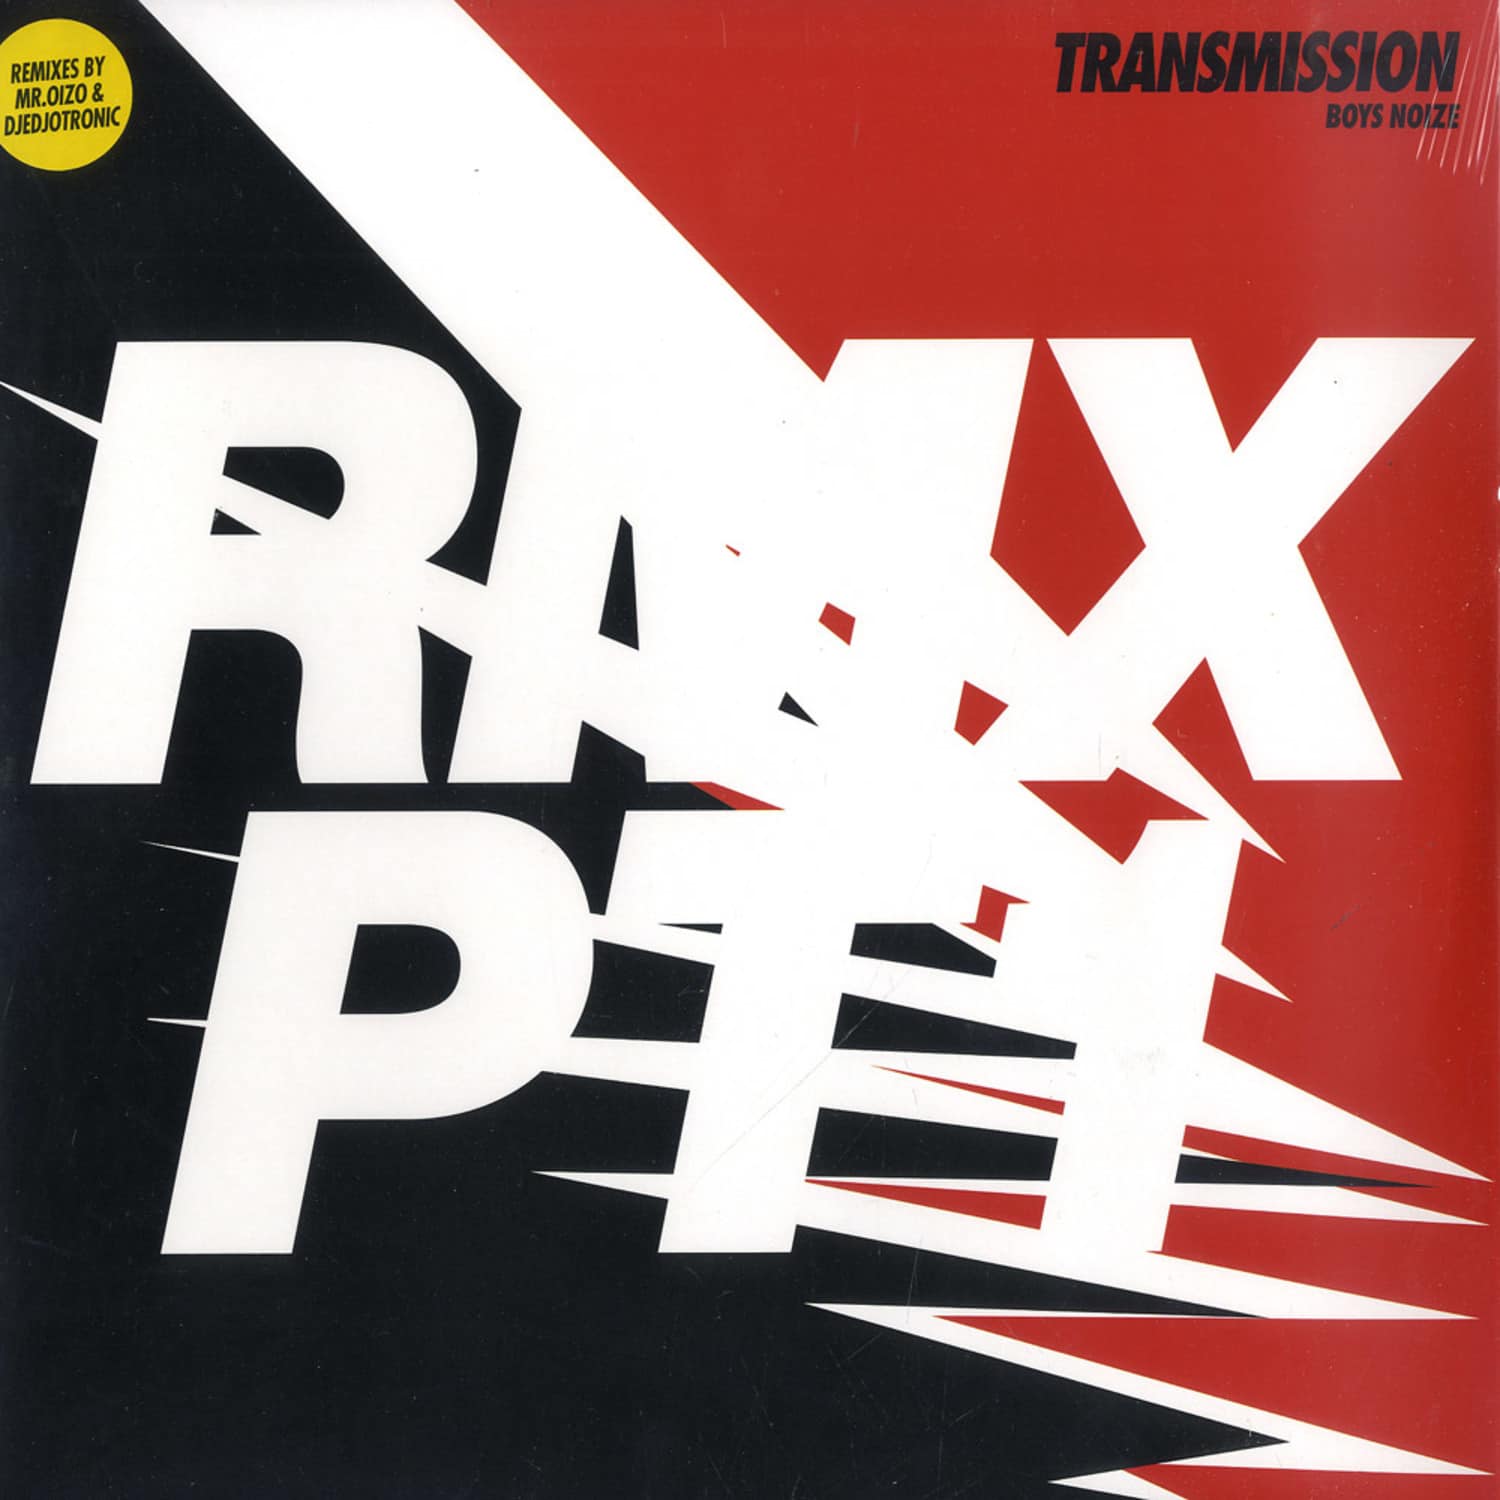 Boys Noize - TRANSMISSION RMXS PT.1 